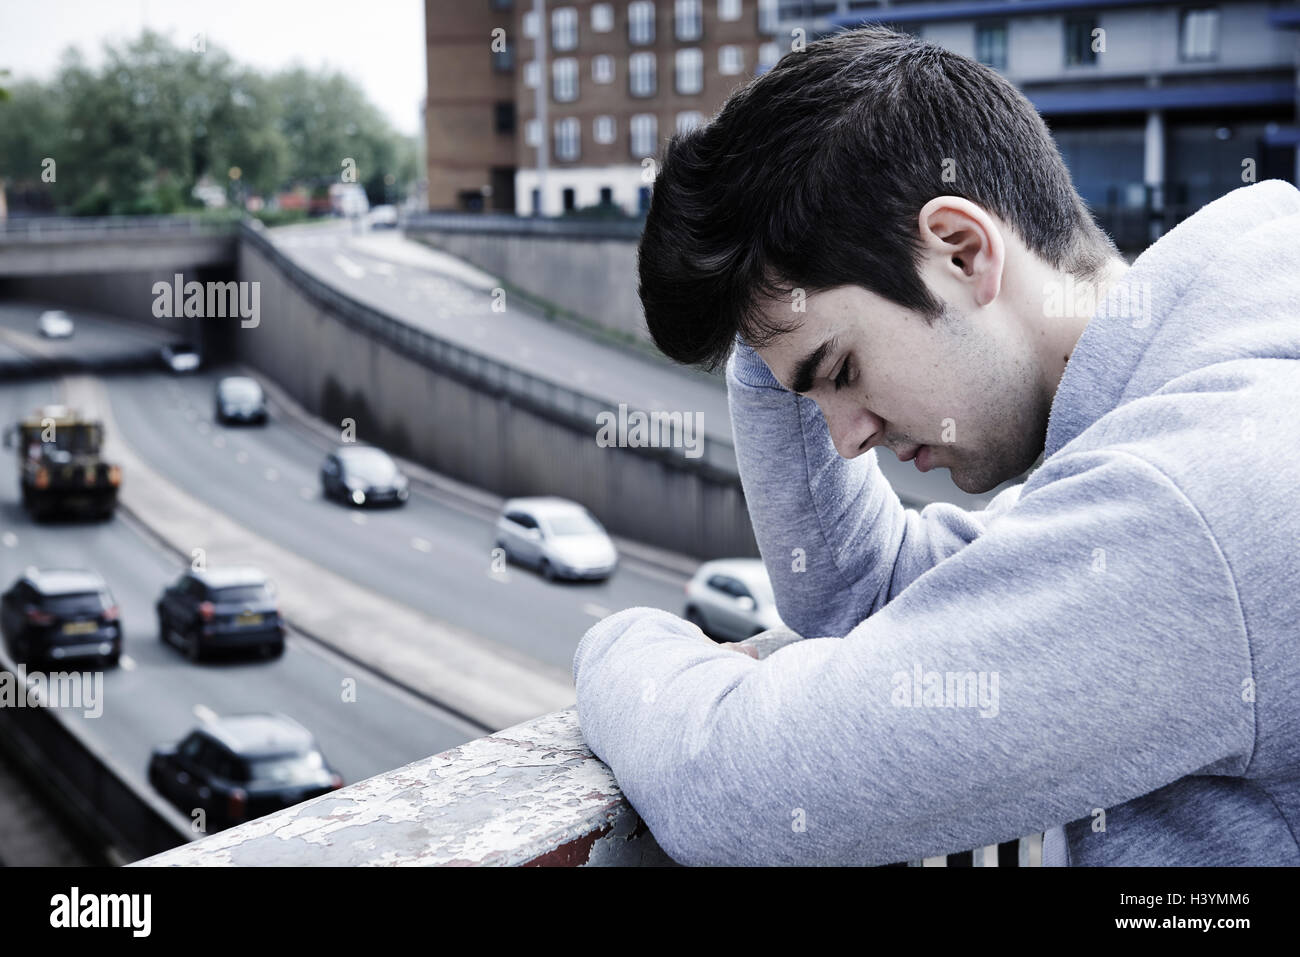 Pisado Joven contemplando el suicidio en el puente de carretera Foto de stock